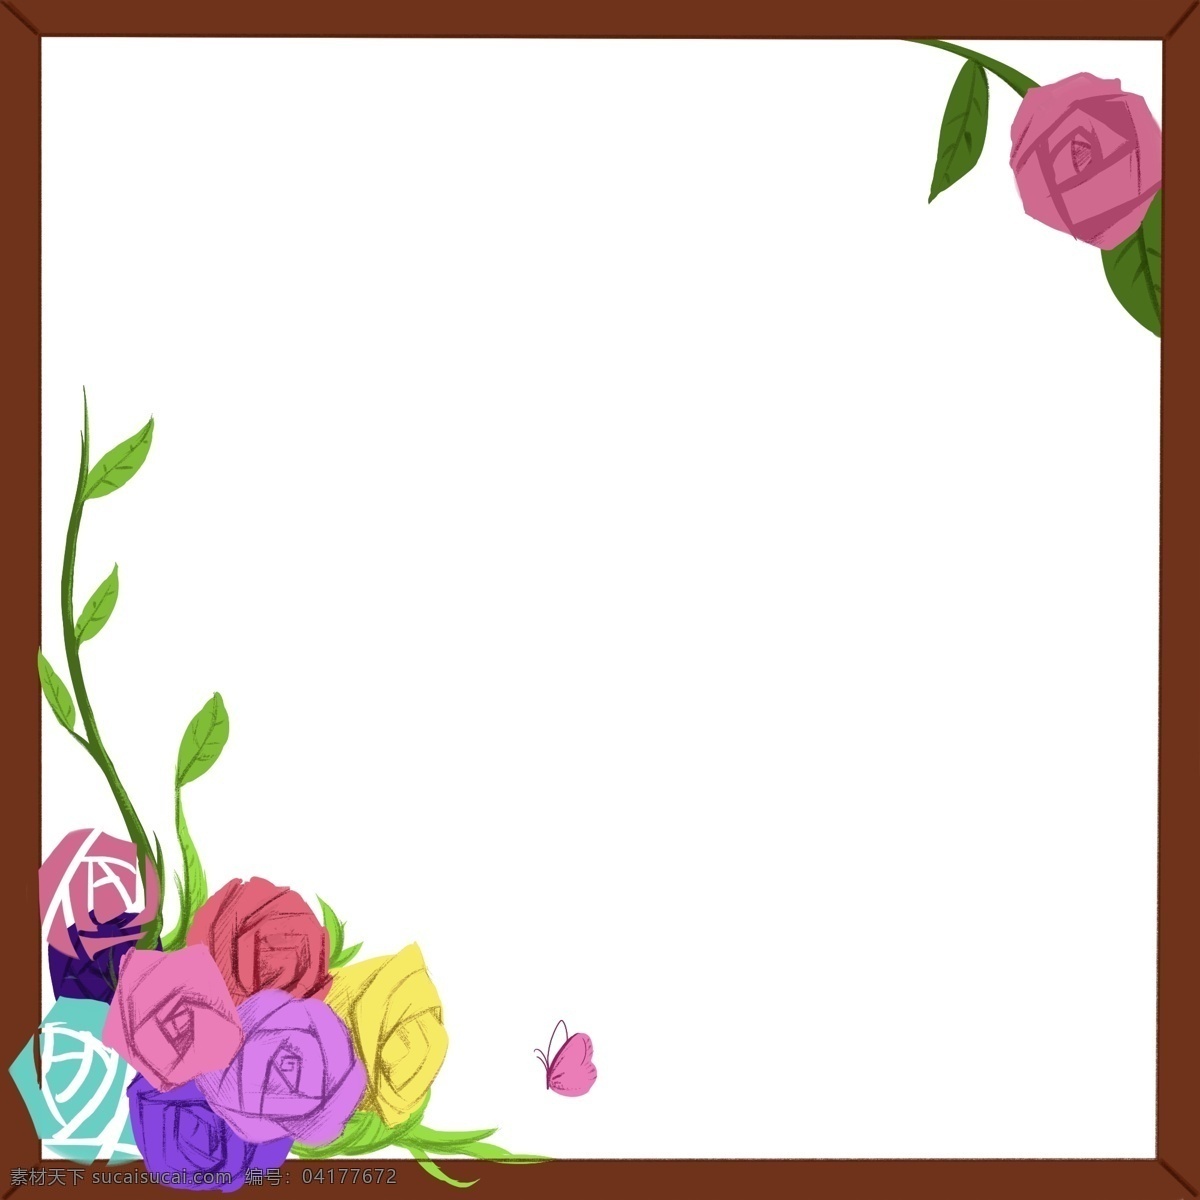 情人节 对角 花束 边框 装饰 木相框 蔷薇 绿叶 花瓣 浪漫 温馨 对角结构 紫色 粉红色 浪漫色系